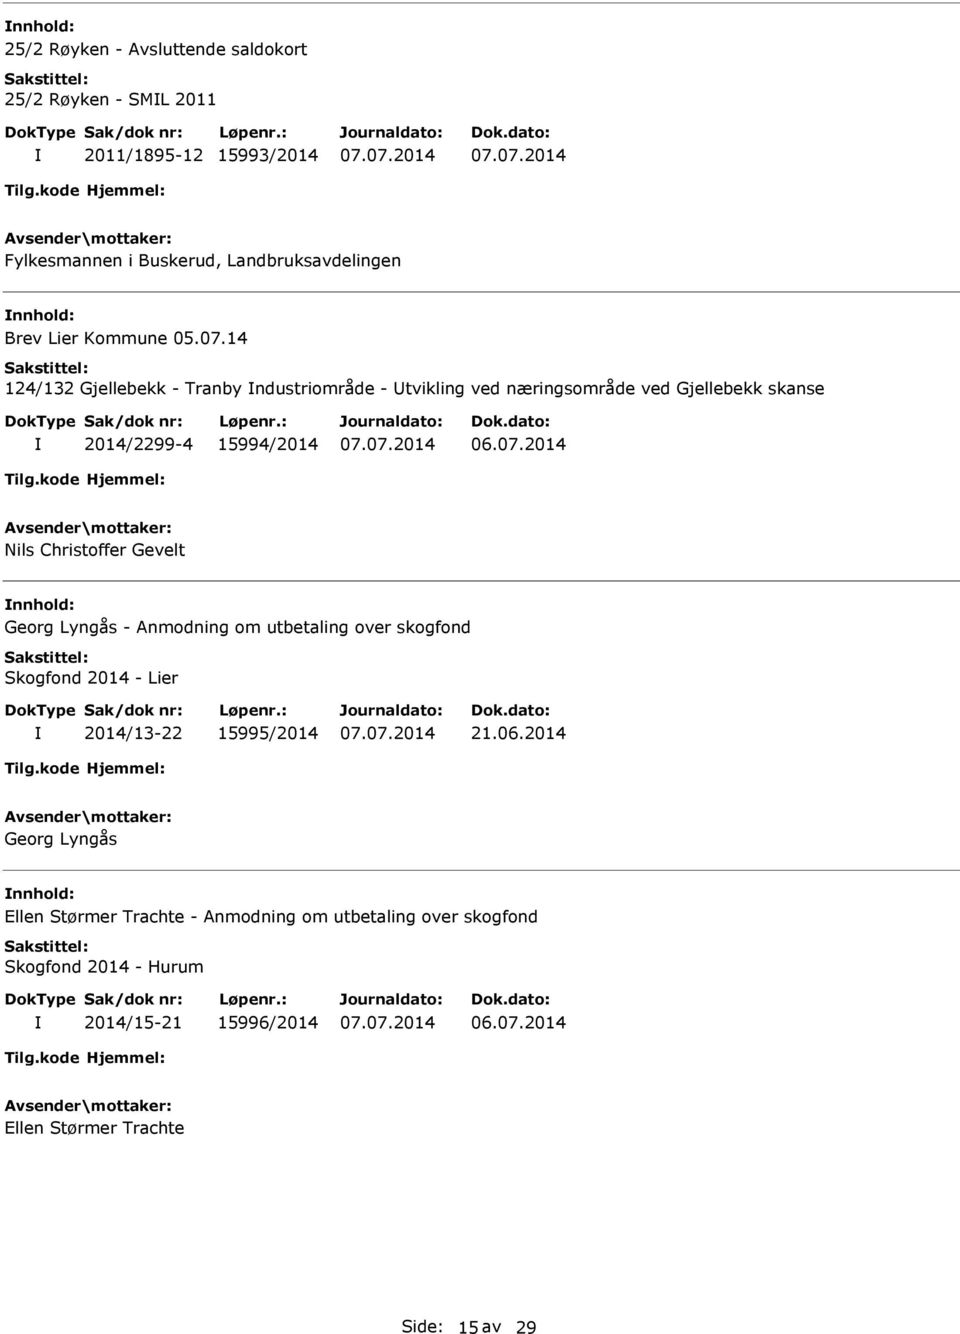 06.2014 Georg Lyngås Ellen Størmer Trachte - Anmodning om utbetaling over skogfond Skogfond 2014 - Hurum 2014/15-21 15996/2014 06.07.